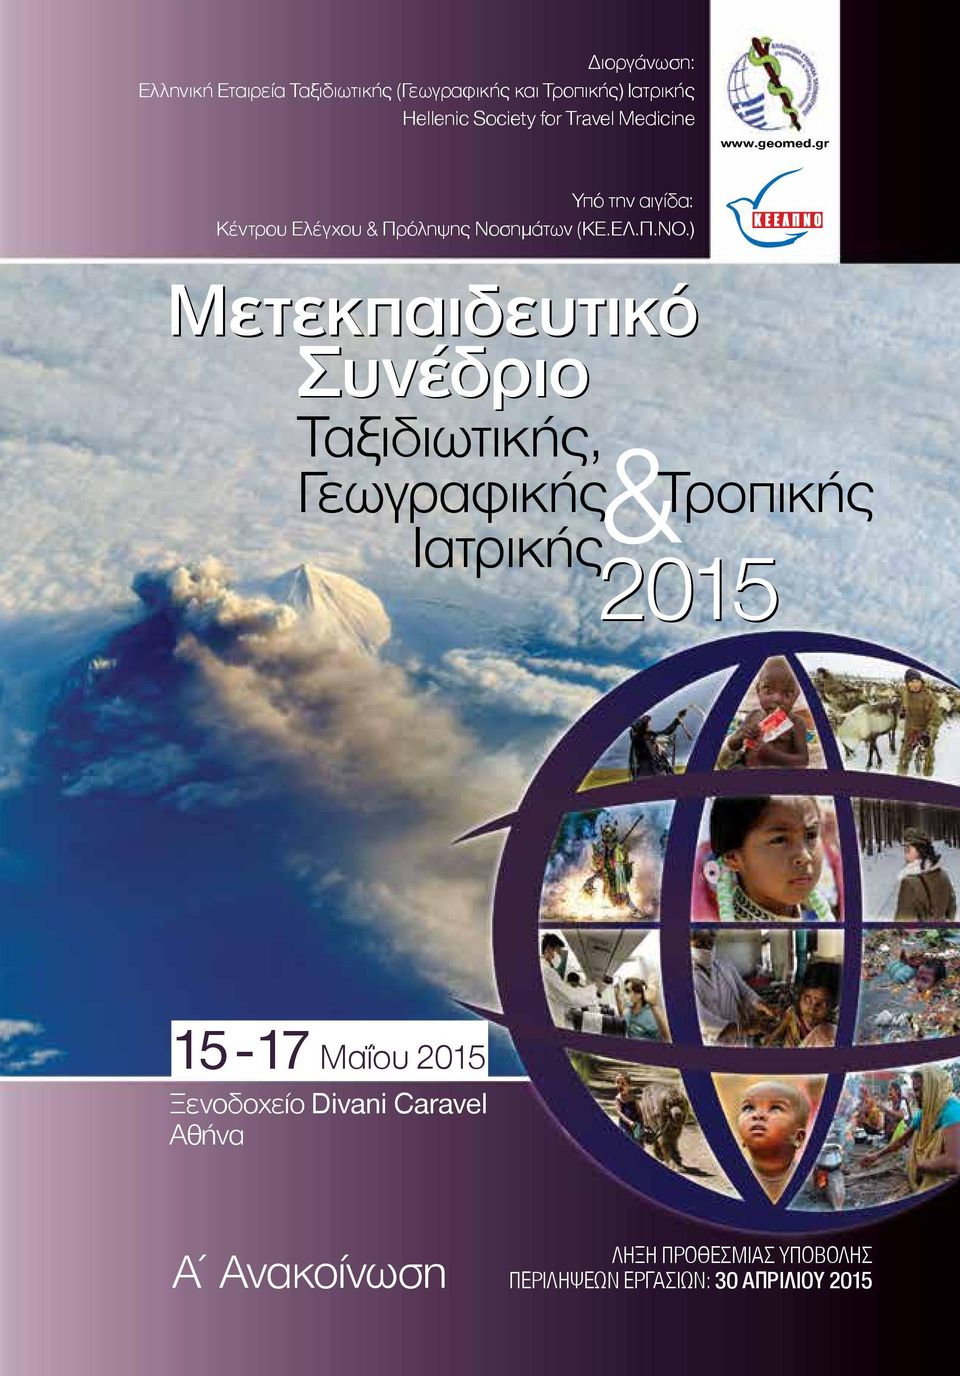 ) Μετεκπαιδευτικό Συνέδριο Ταξιδιωτικής, Γεωγραφικής & Ιατρικής Τροπικής 2015 15-17 Μαΐου 2015